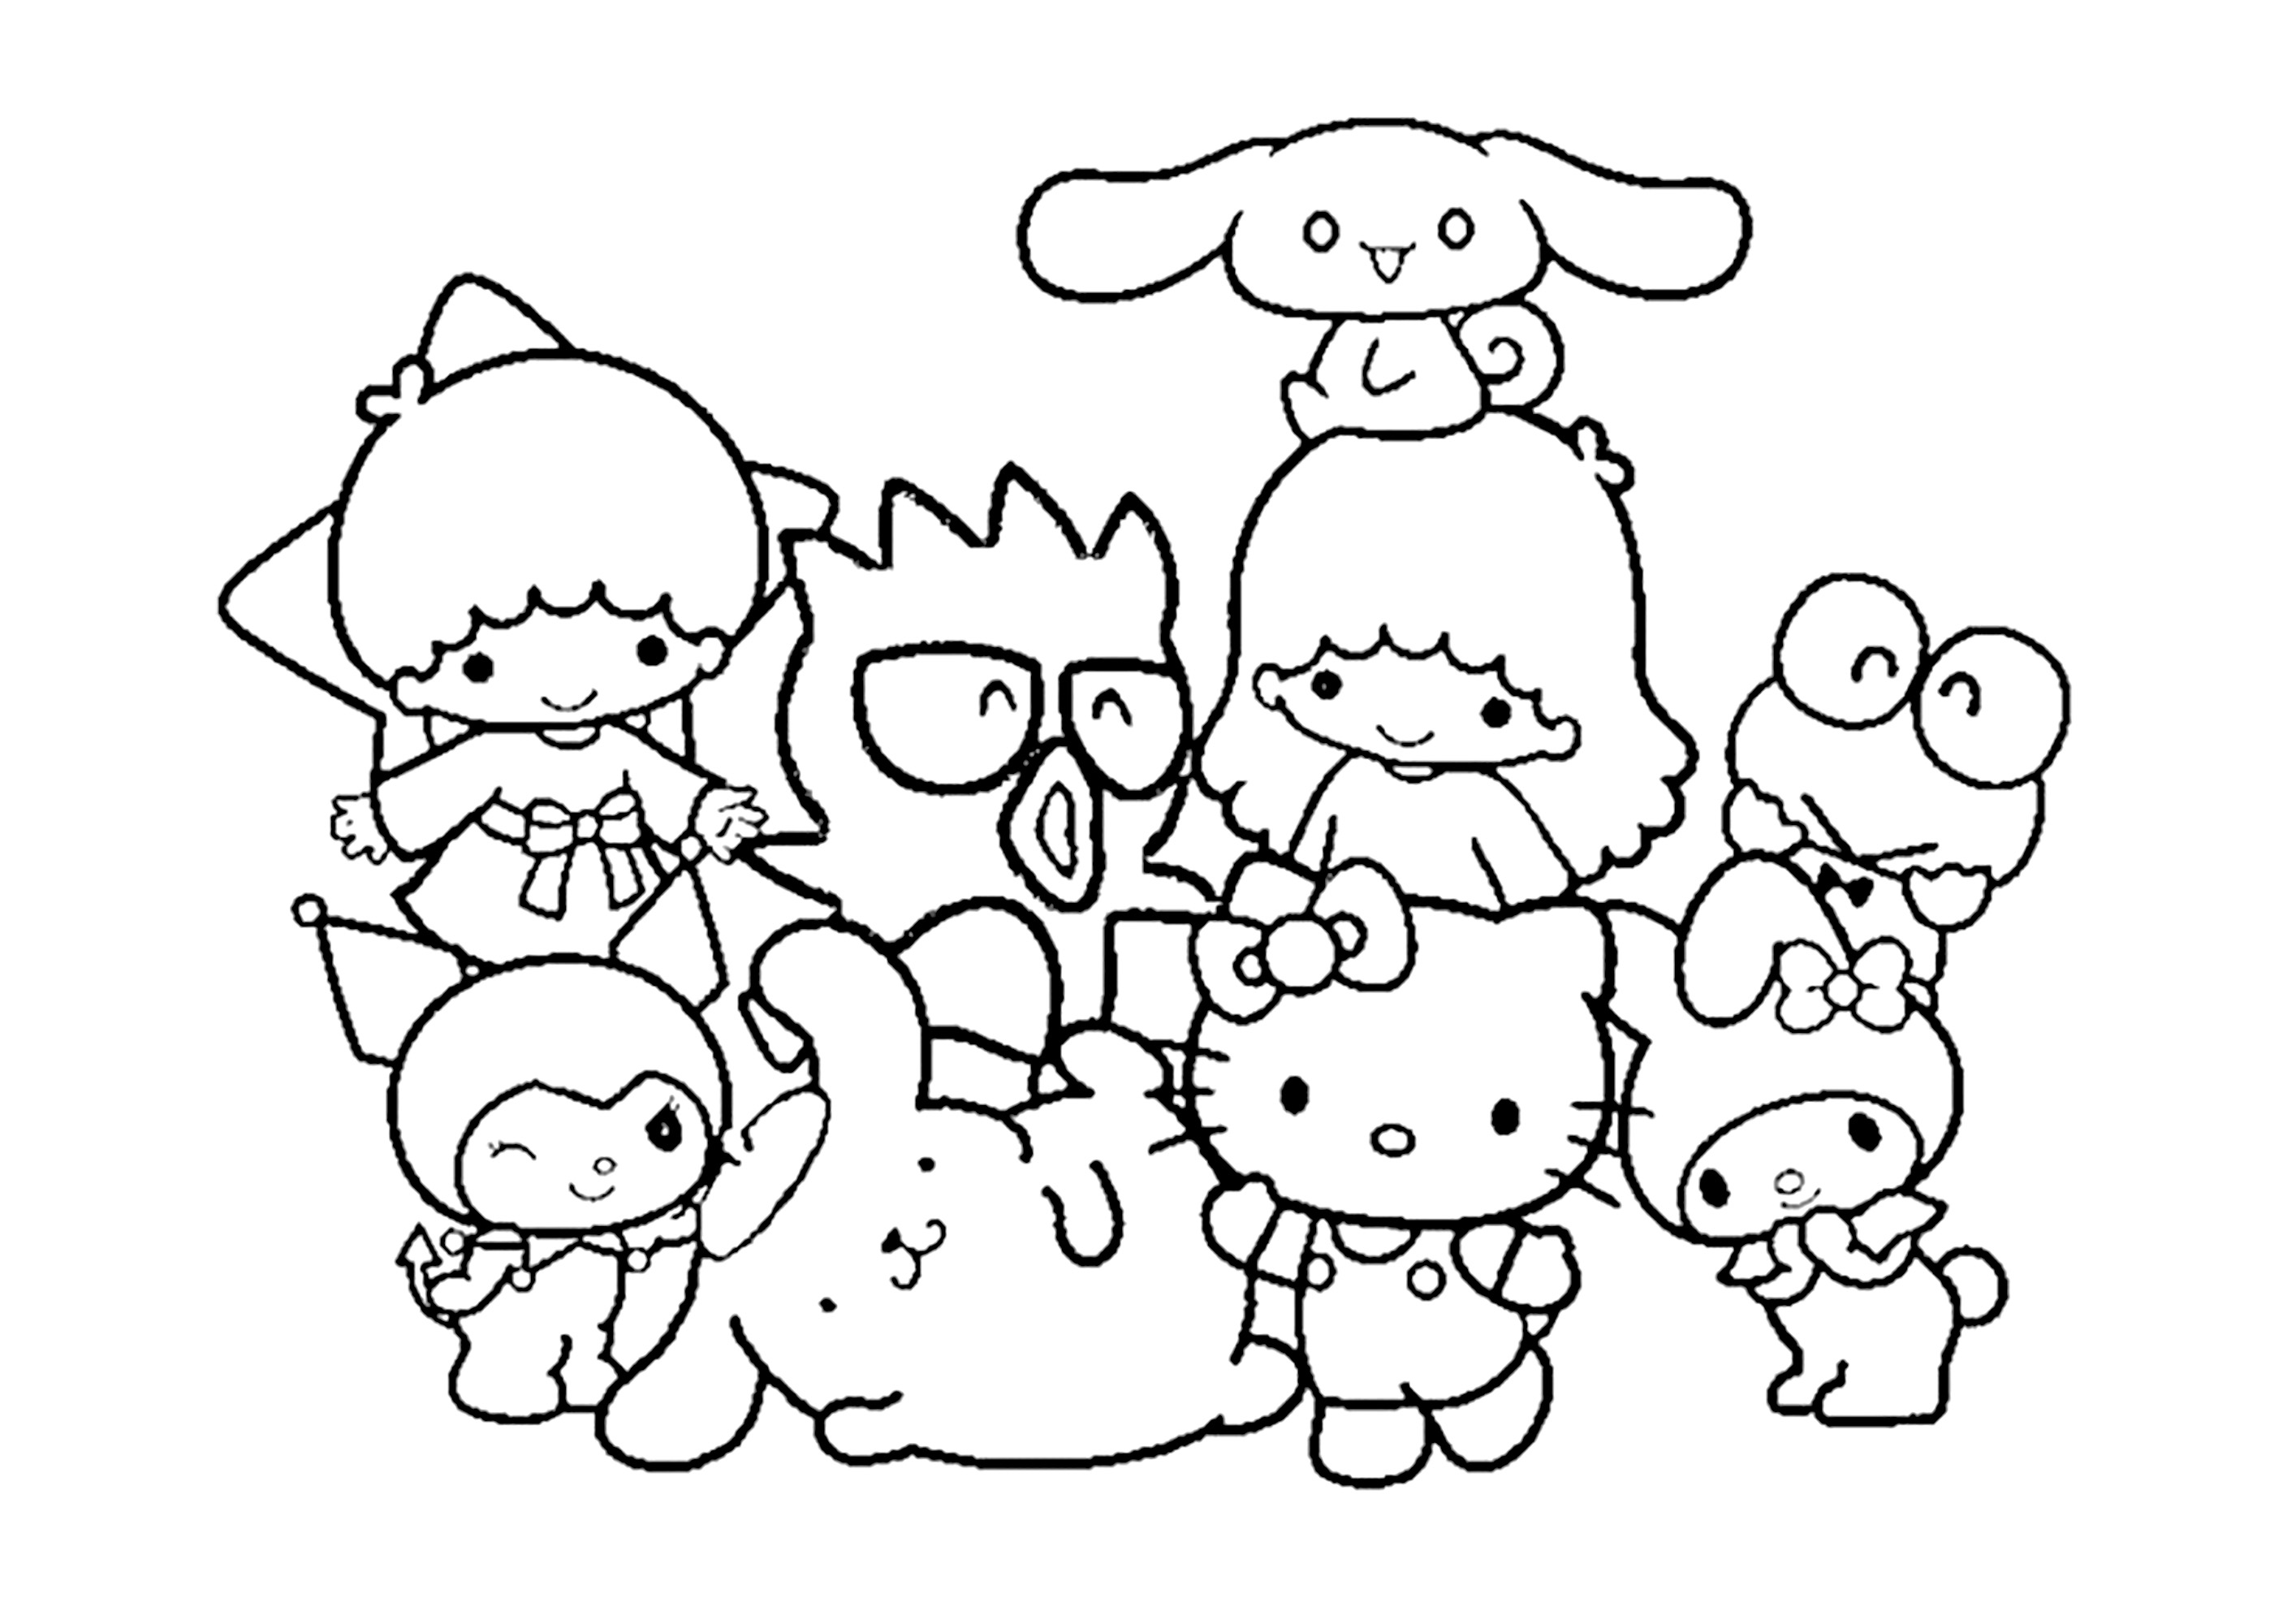 Les amis de Sanrio. Hello Kitty, Kuromi, My Melody et tous leurs amis